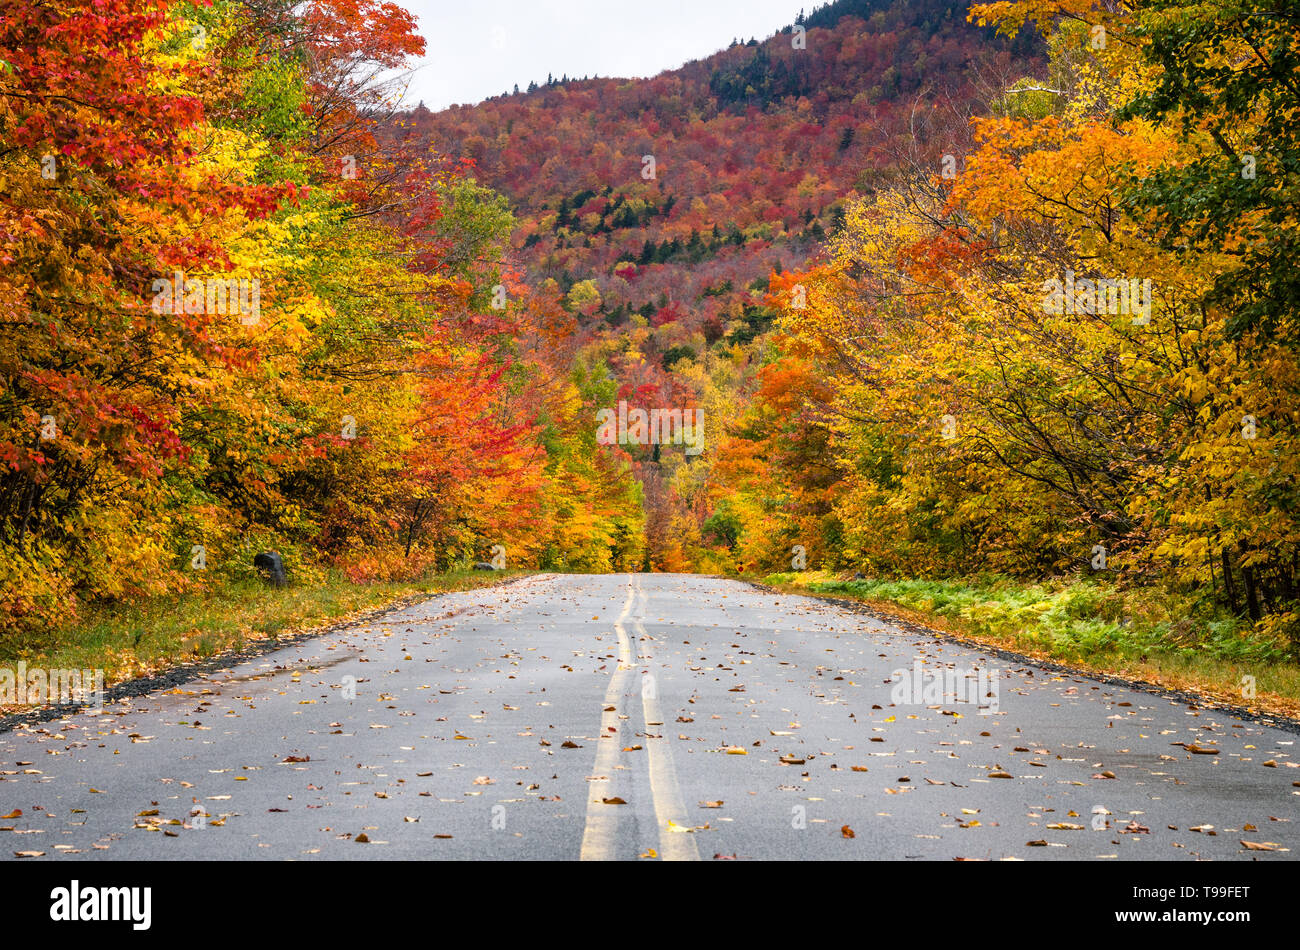 Gerader Strecke mit einem Berg Straße durch einen bunten Wald von Ahorn im Herbst Laub Höhepunkt im Herbst. Adirondacks, Upstate New York in den USA. Stockfoto